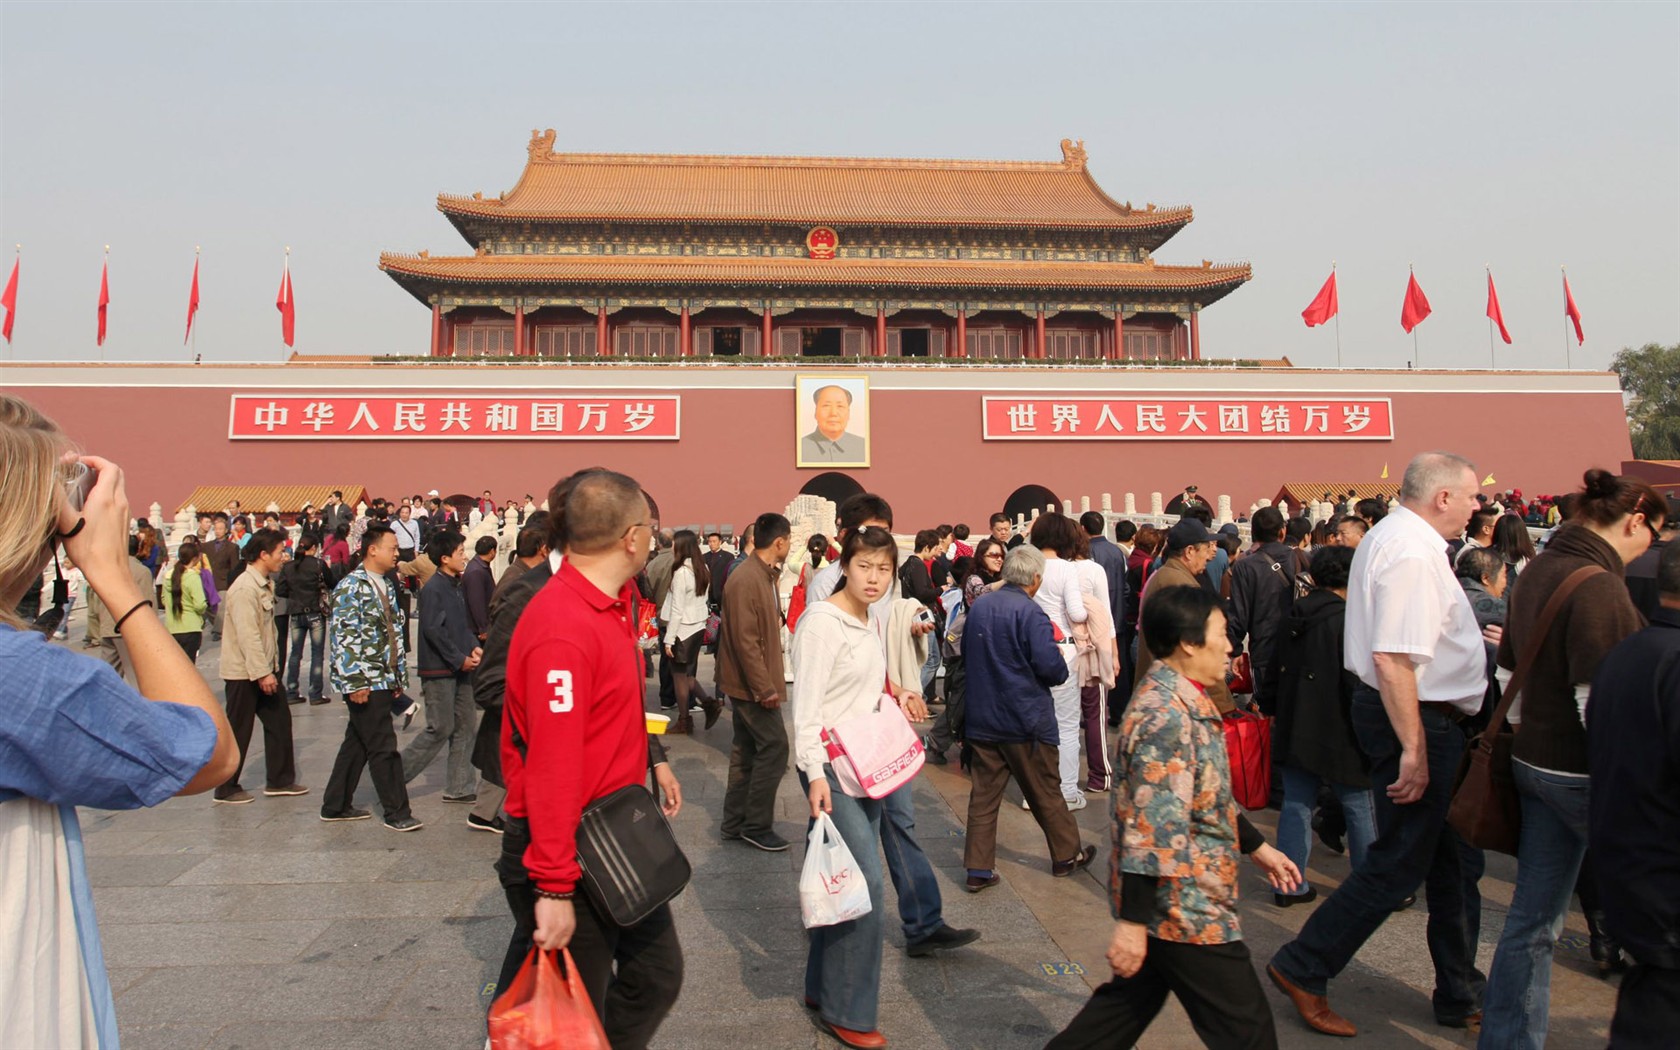 Tour Beijing - Platz des Himmlischen Friedens (GGC Werke) #12 - 1680x1050